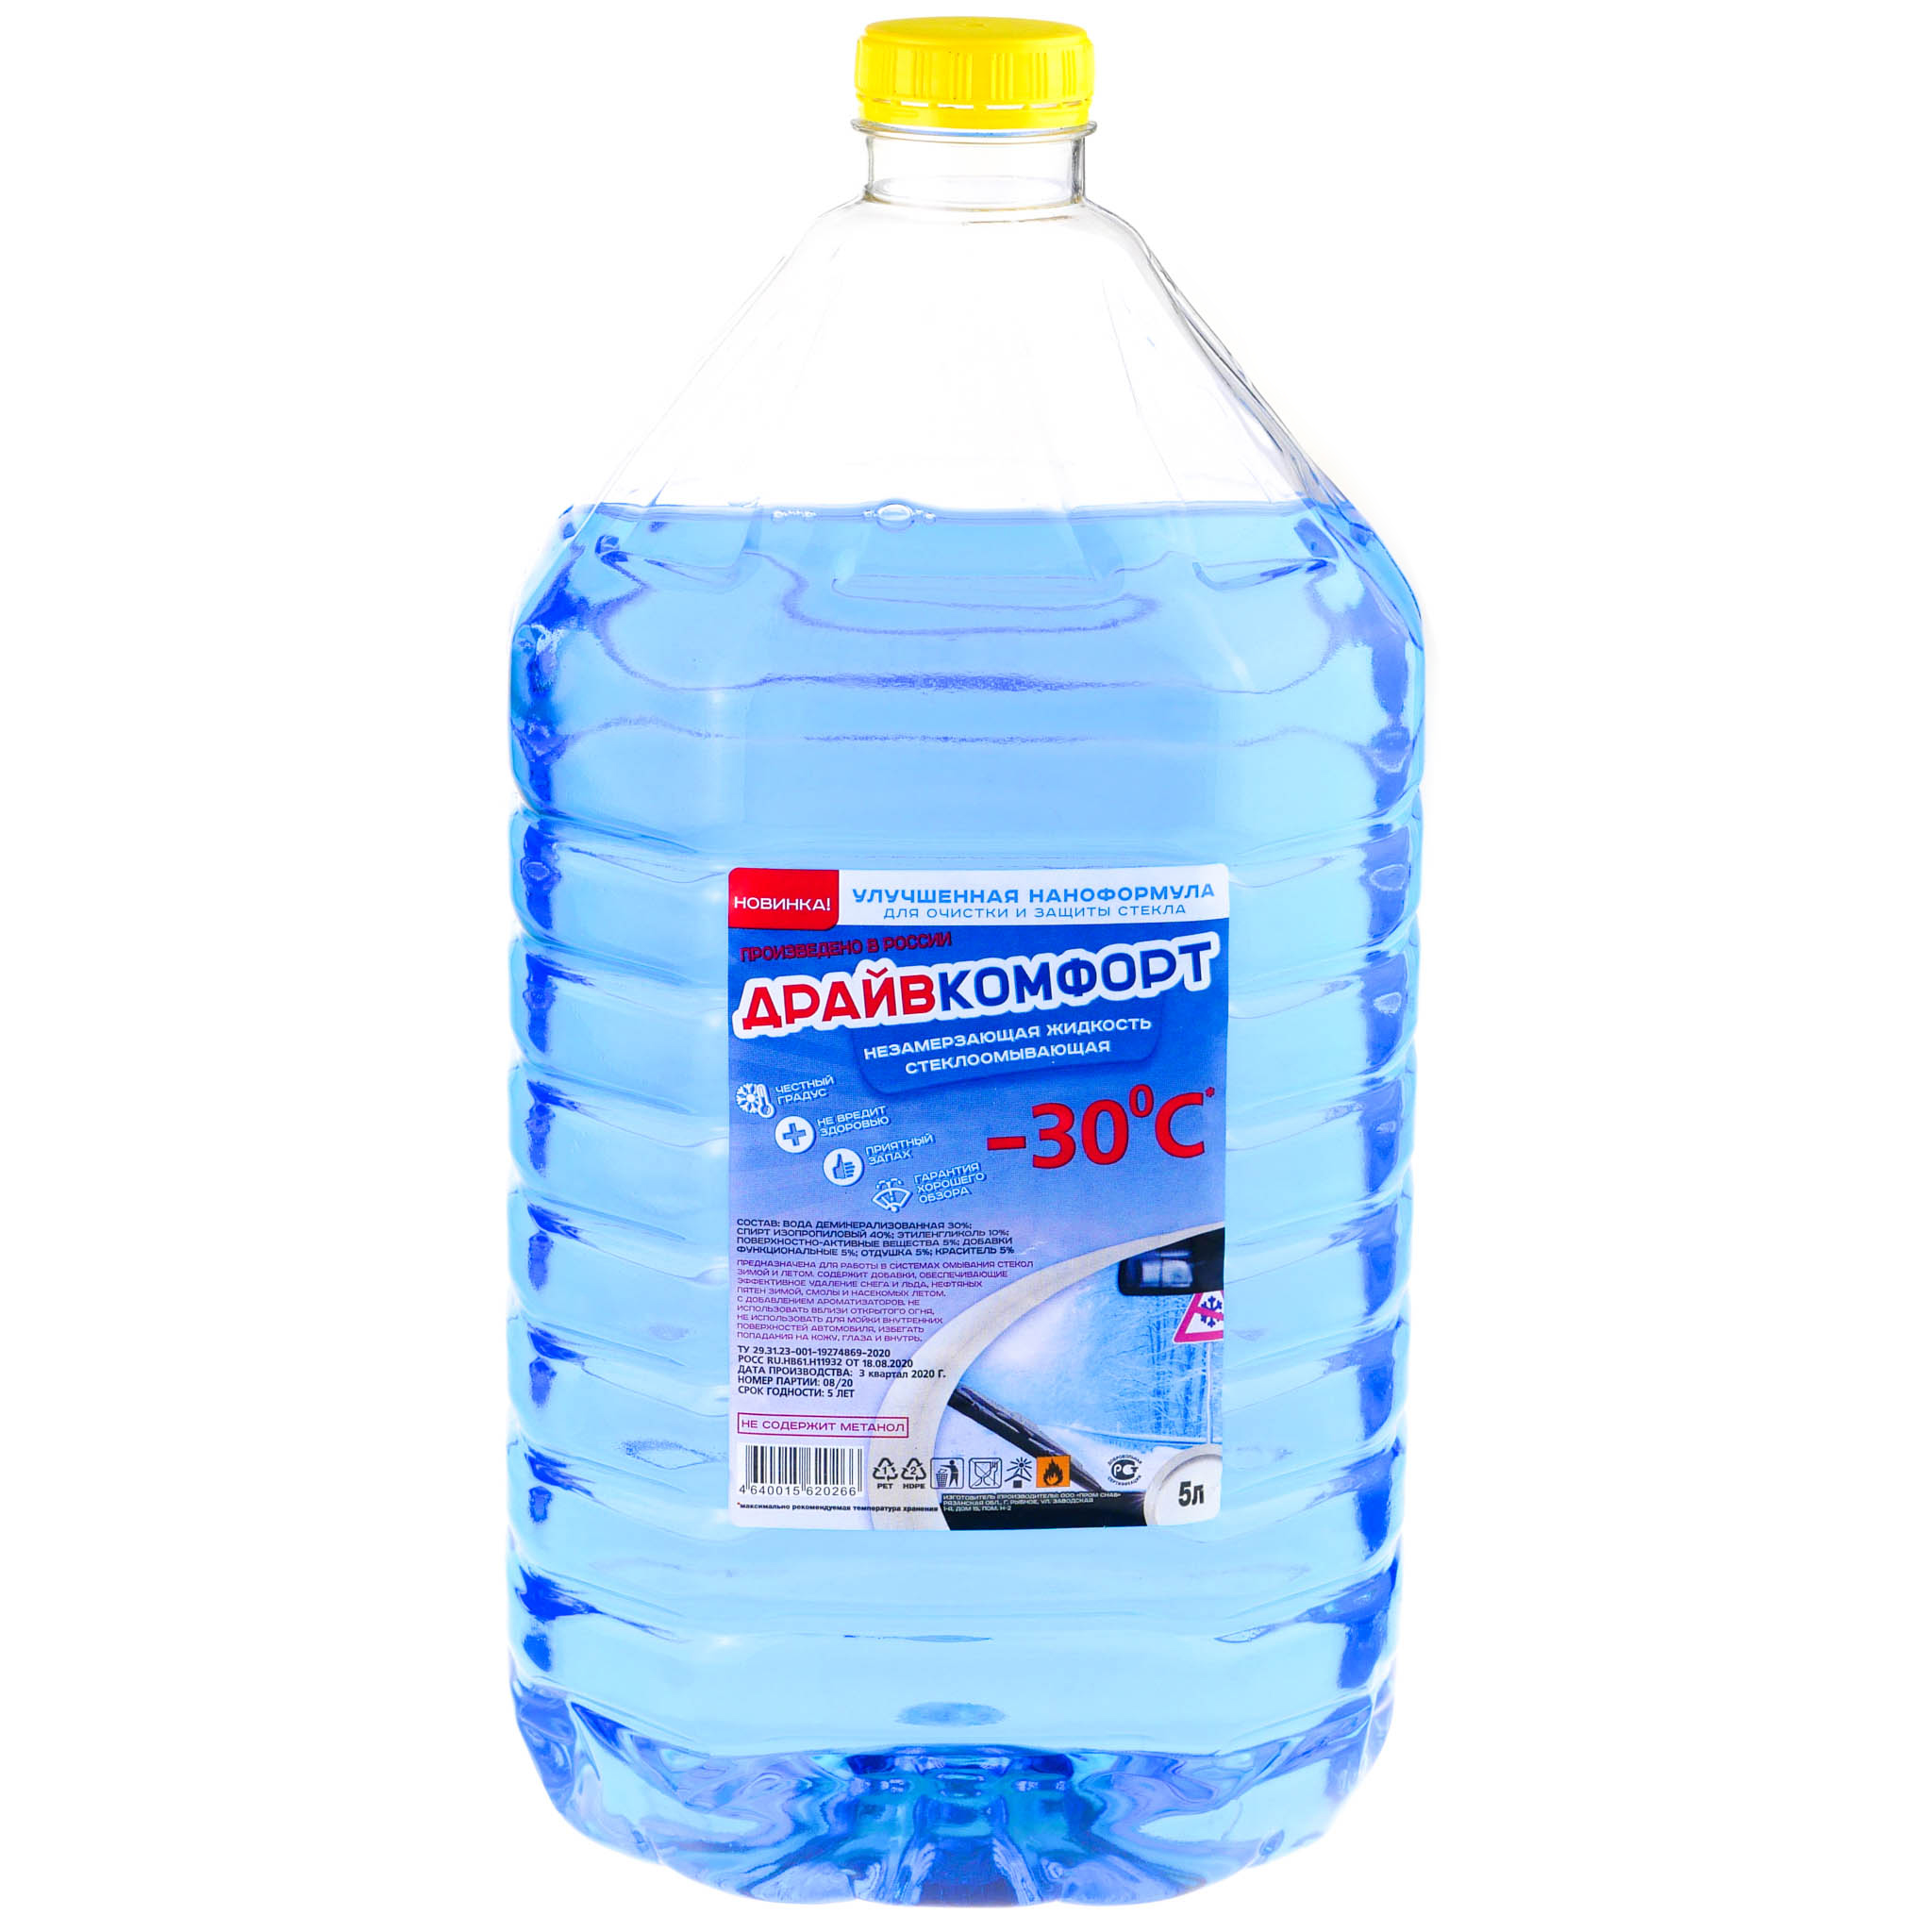 Незамерзающая стеклоомывающая жидкость (Синяя) (до -30°C)  5,0 л - Лаки краски lkvlg.ru